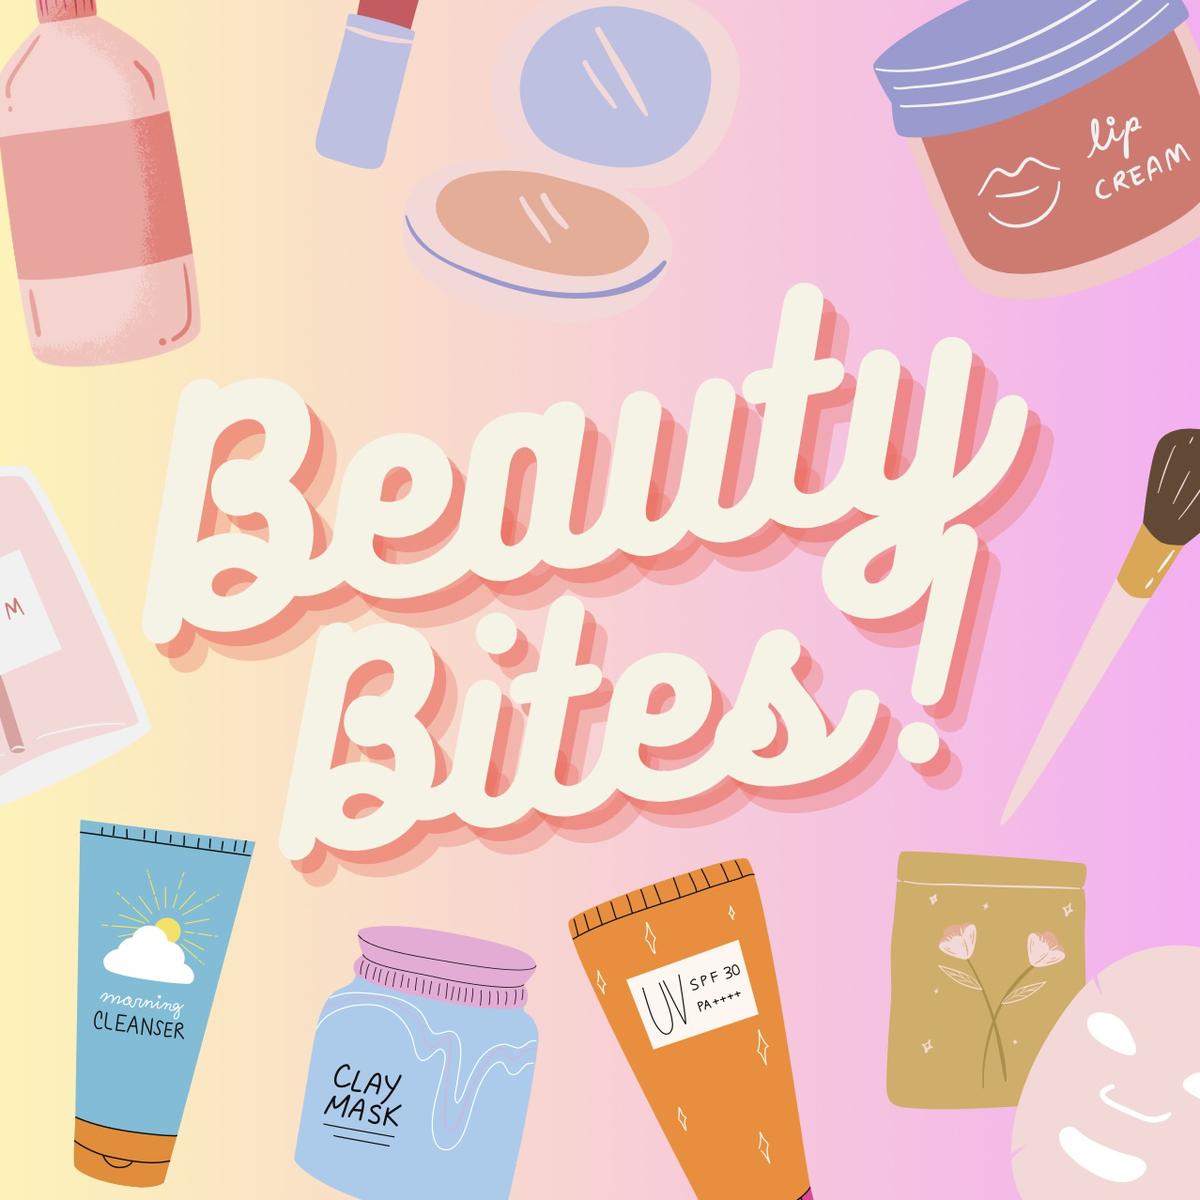 beauty bites 🌻's images